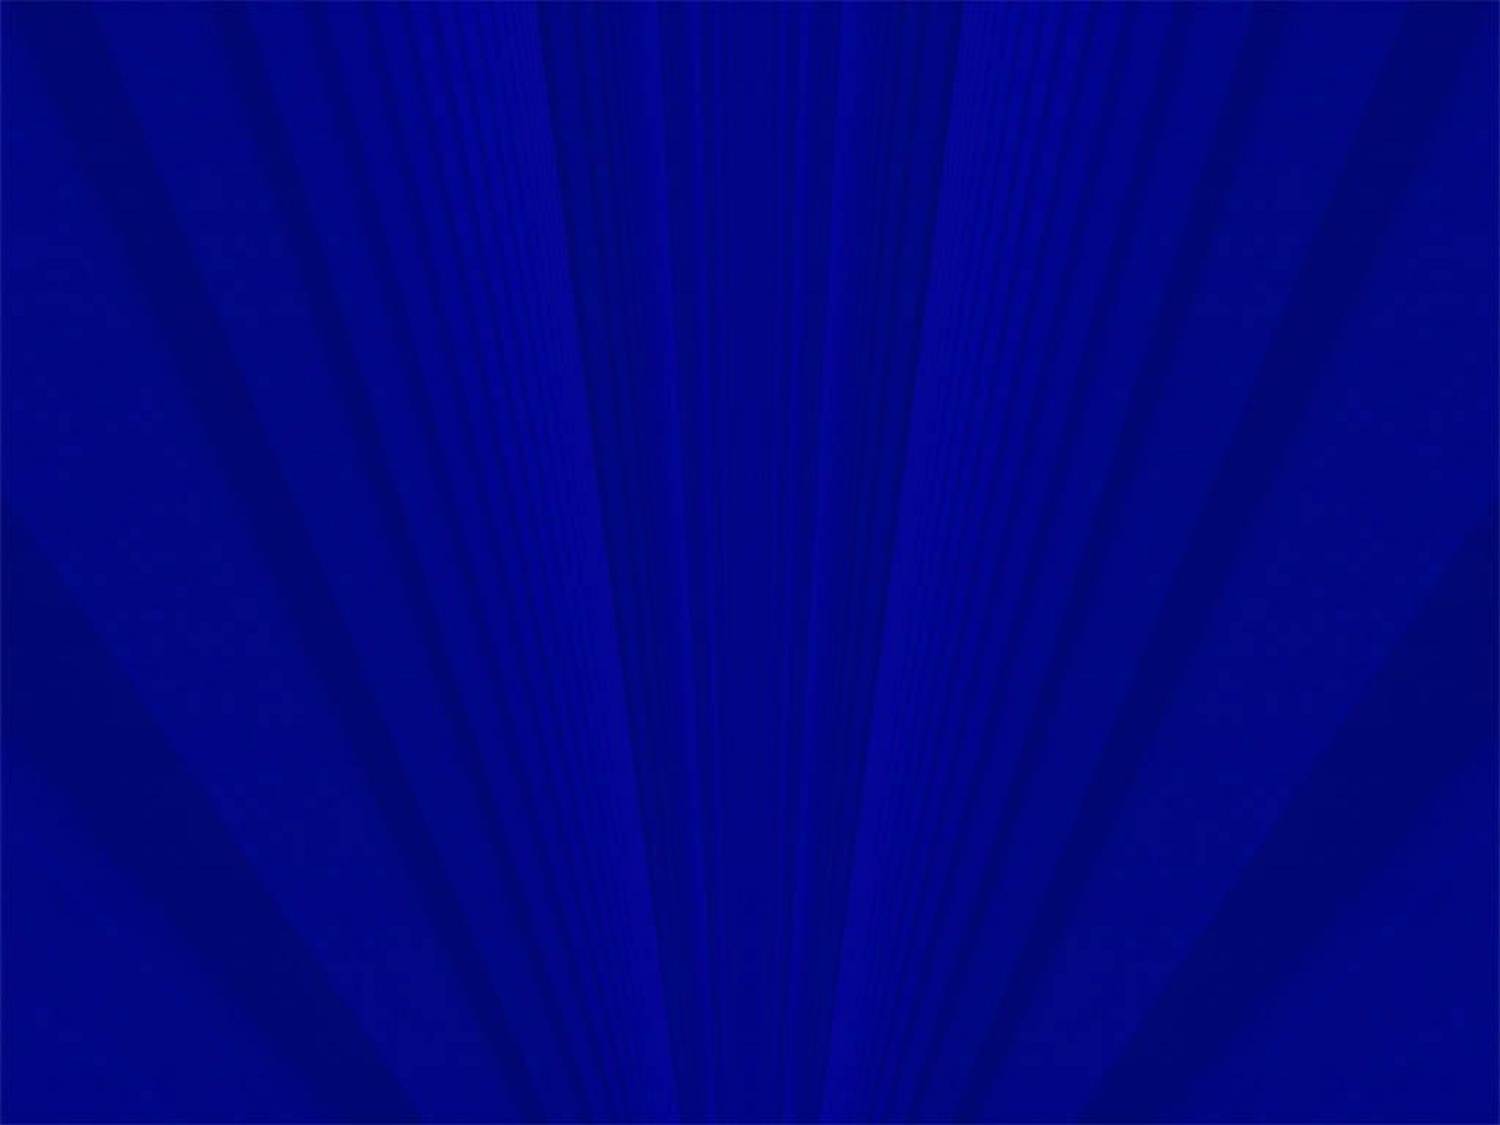 49+] Royal Blue Wallpapers - WallpaperSafari